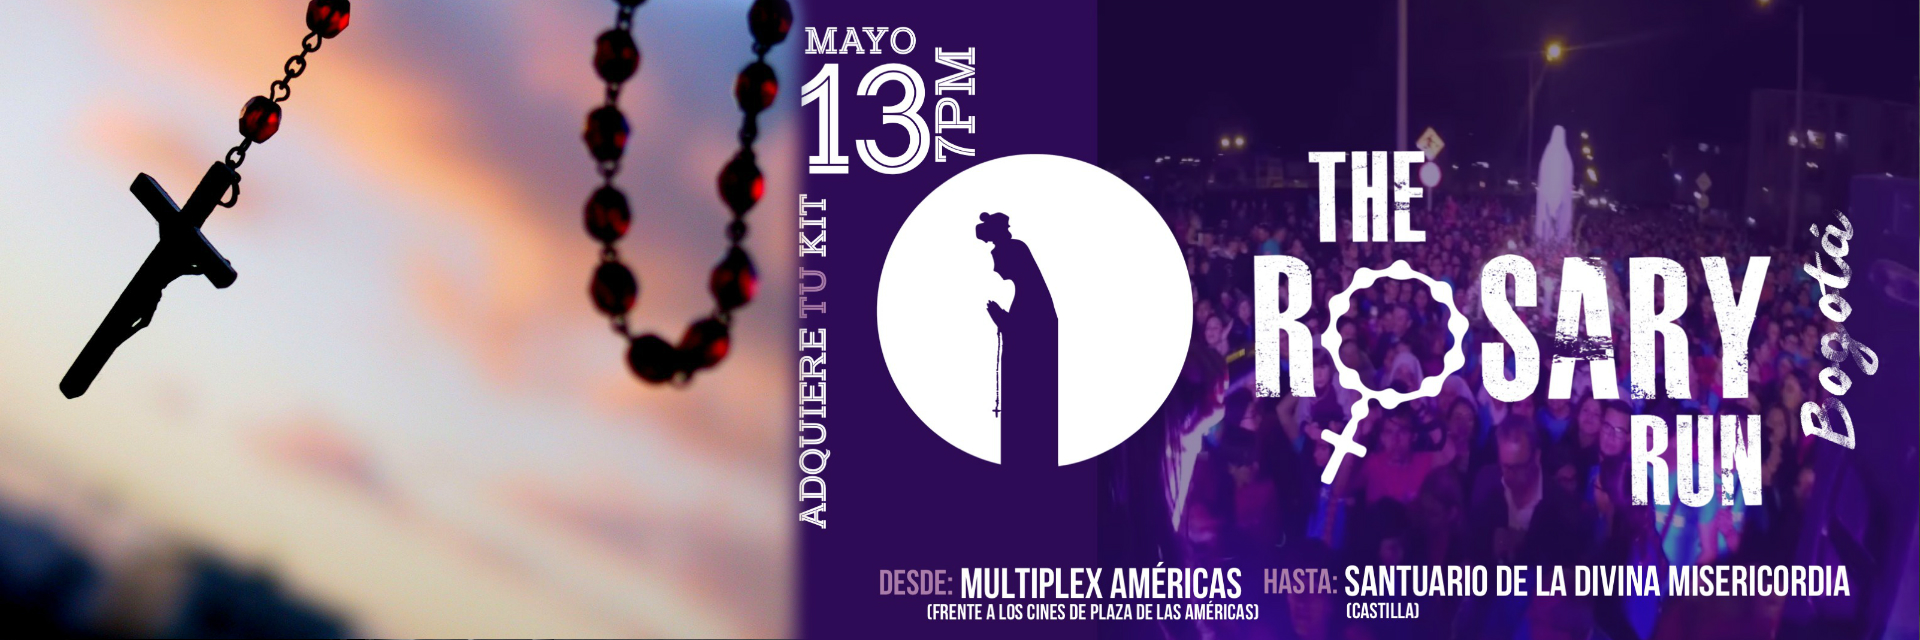 The Rosary Run Bogotá, se realizará el sábado 13 de mayo